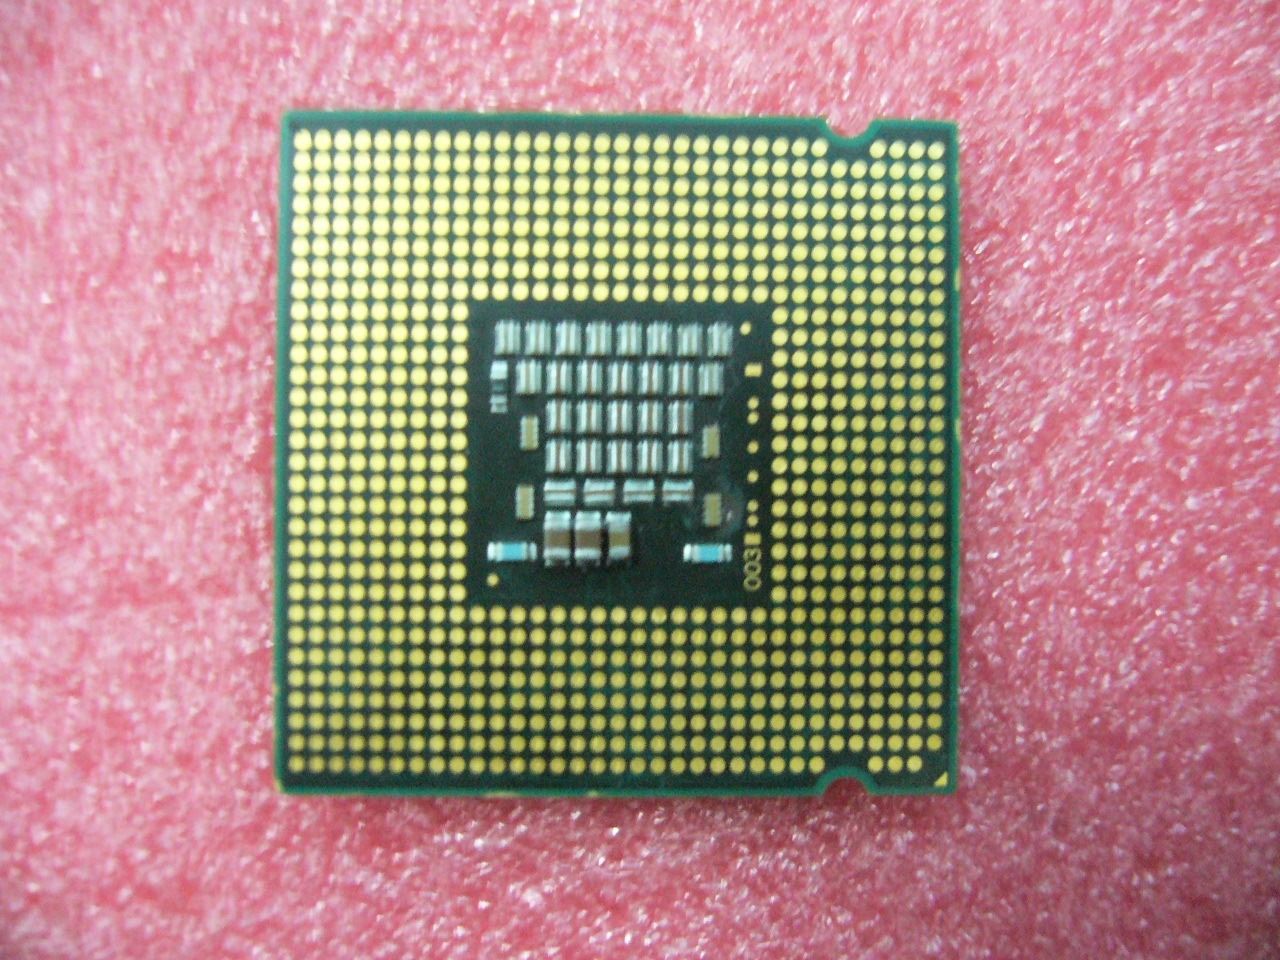 QTY 1x INTEL Xeon Dual Cores 3050 CPU 2.13GHz 2MB/1066Mhz LGA775 SLABZ SL9VS - Click Image to Close